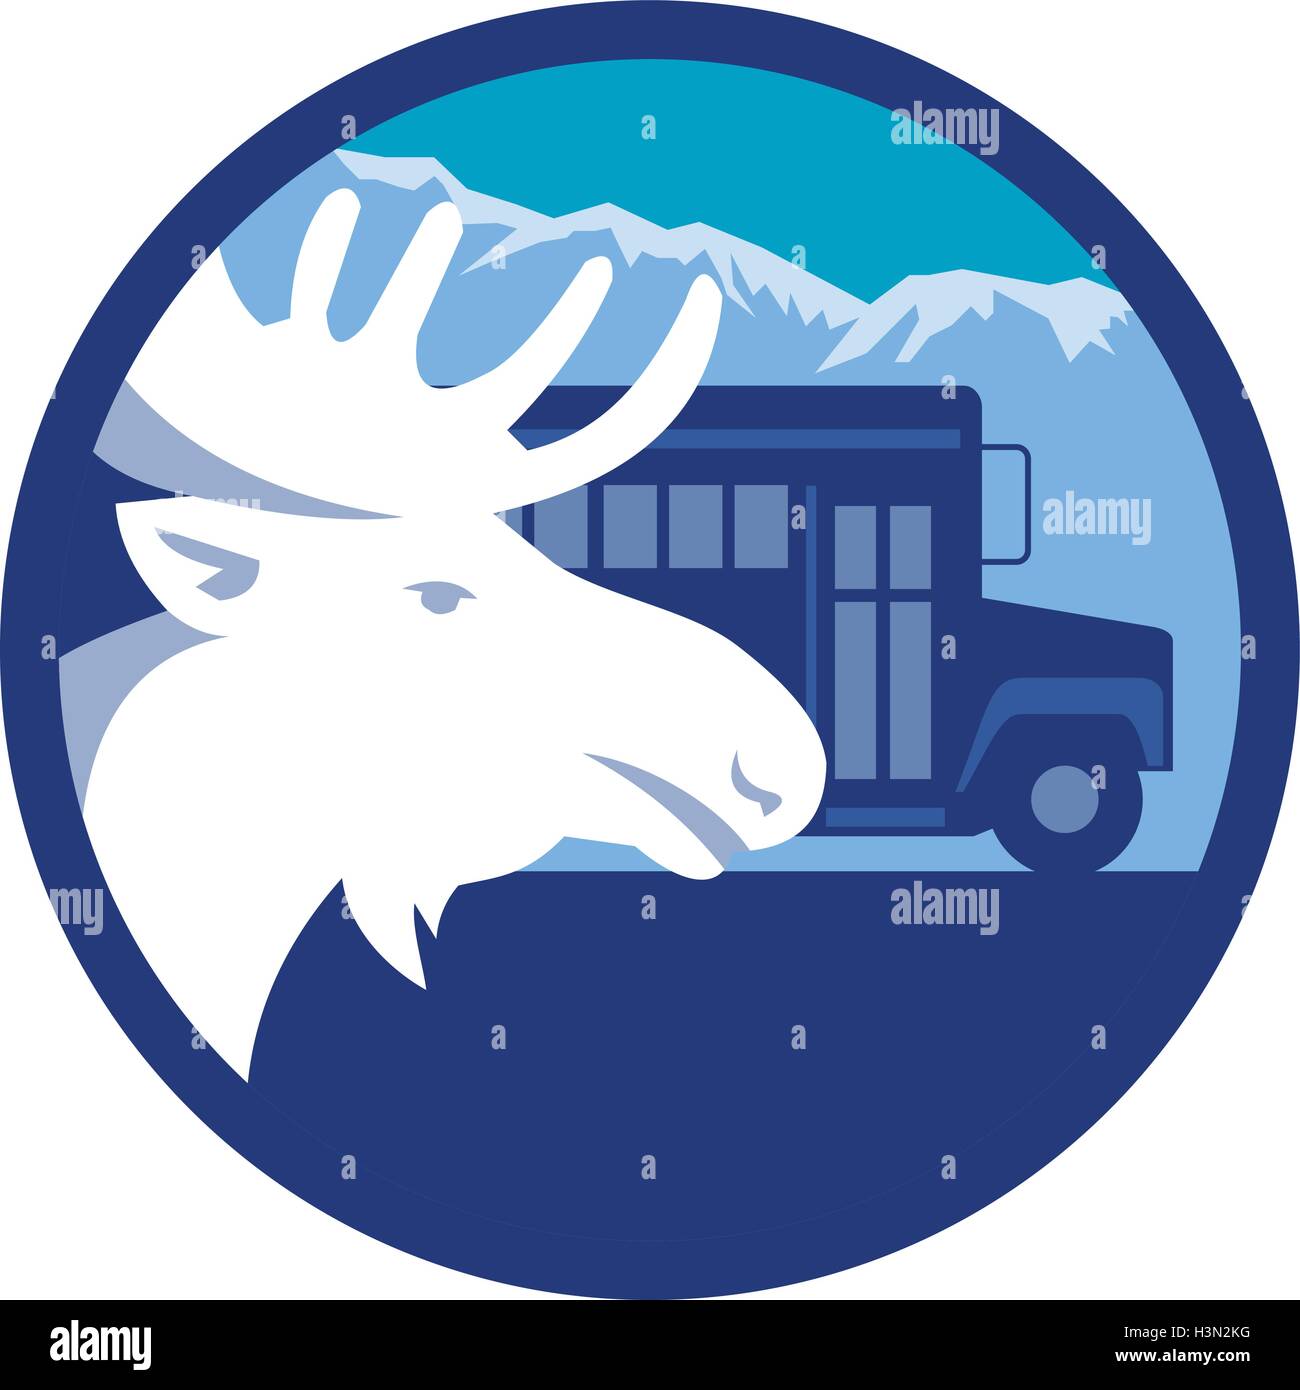 Illustrazione di una testa di alce visto dal lato impostato all'interno del cerchio con il bus di scuola e le montagne delle Alpi in background fatto in stile retrò. Illustrazione Vettoriale